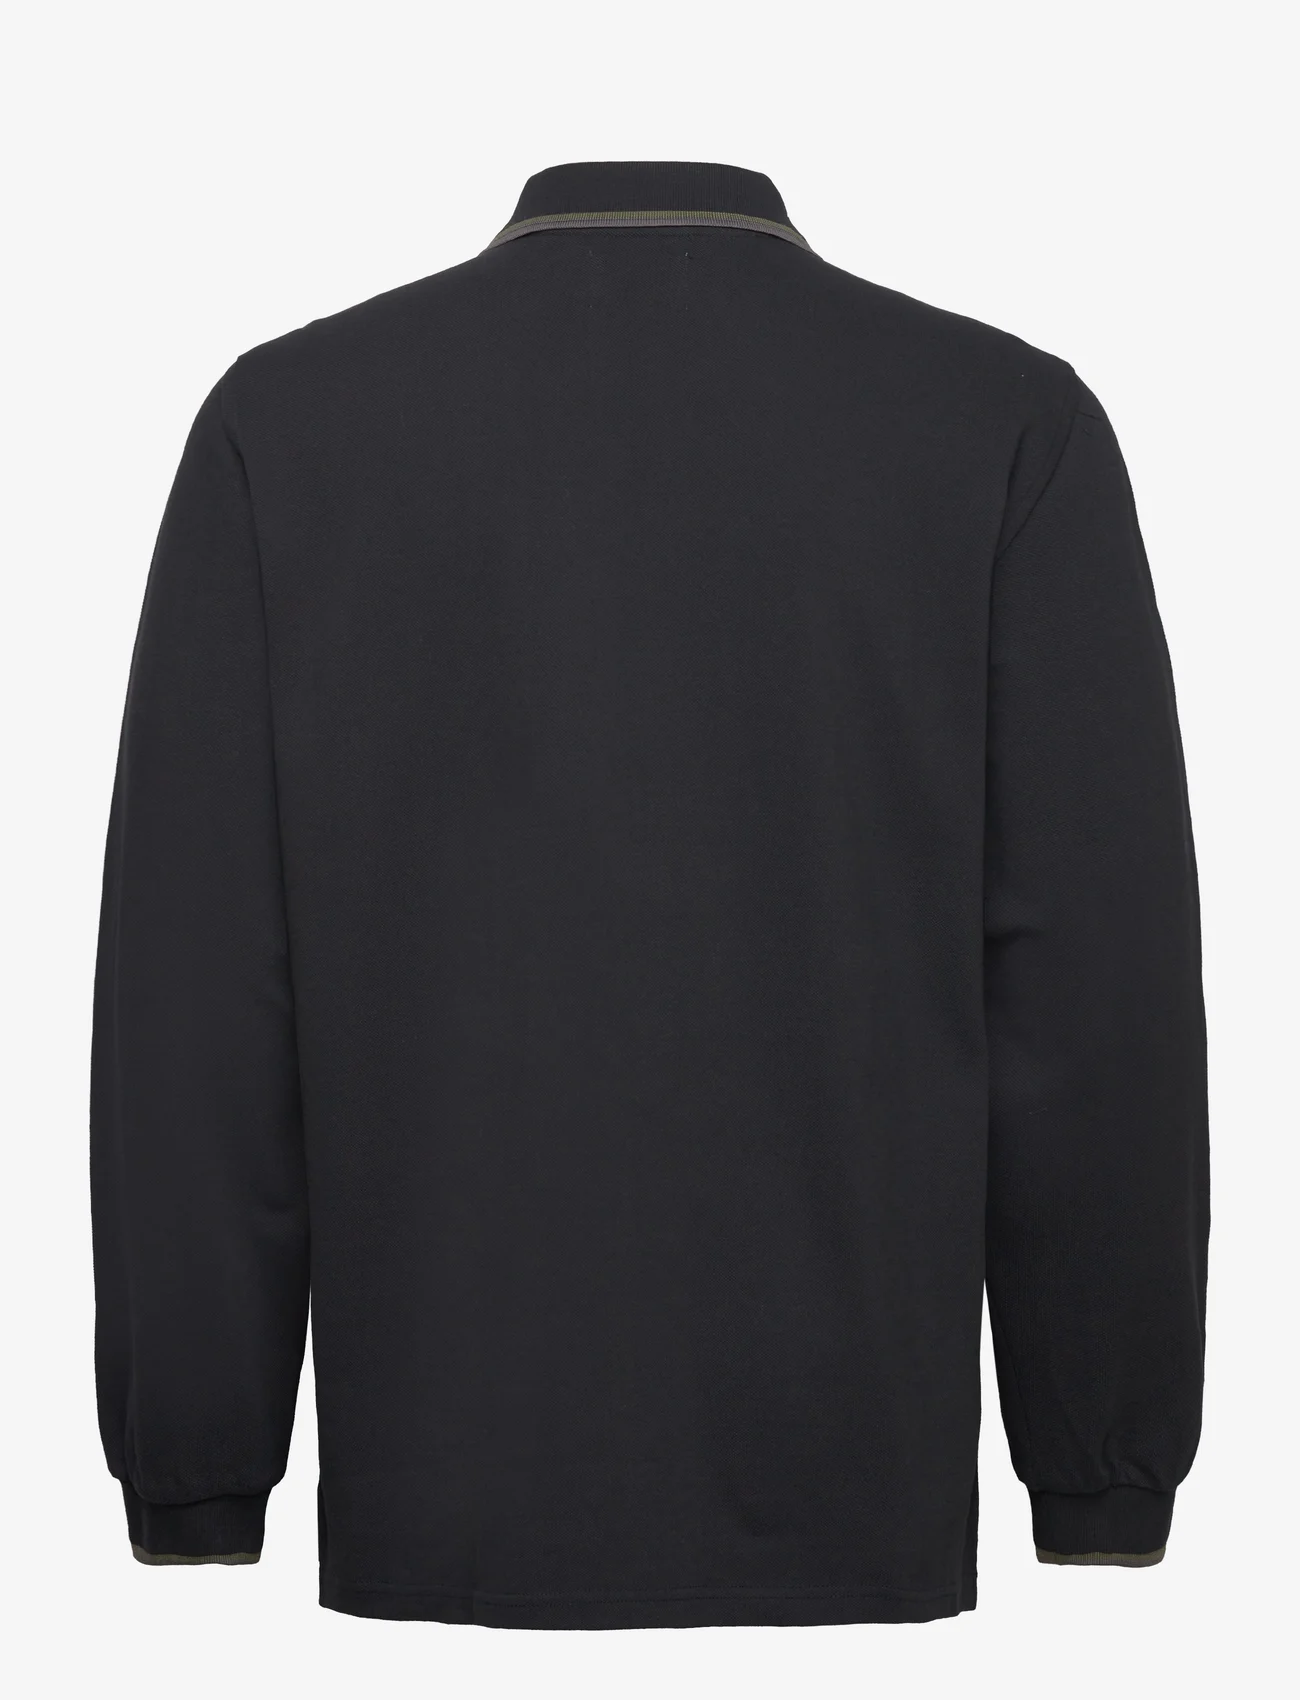 Double A by Wood Wood - Len Baseline LS Polo GOTS - polo shirts - black - 1